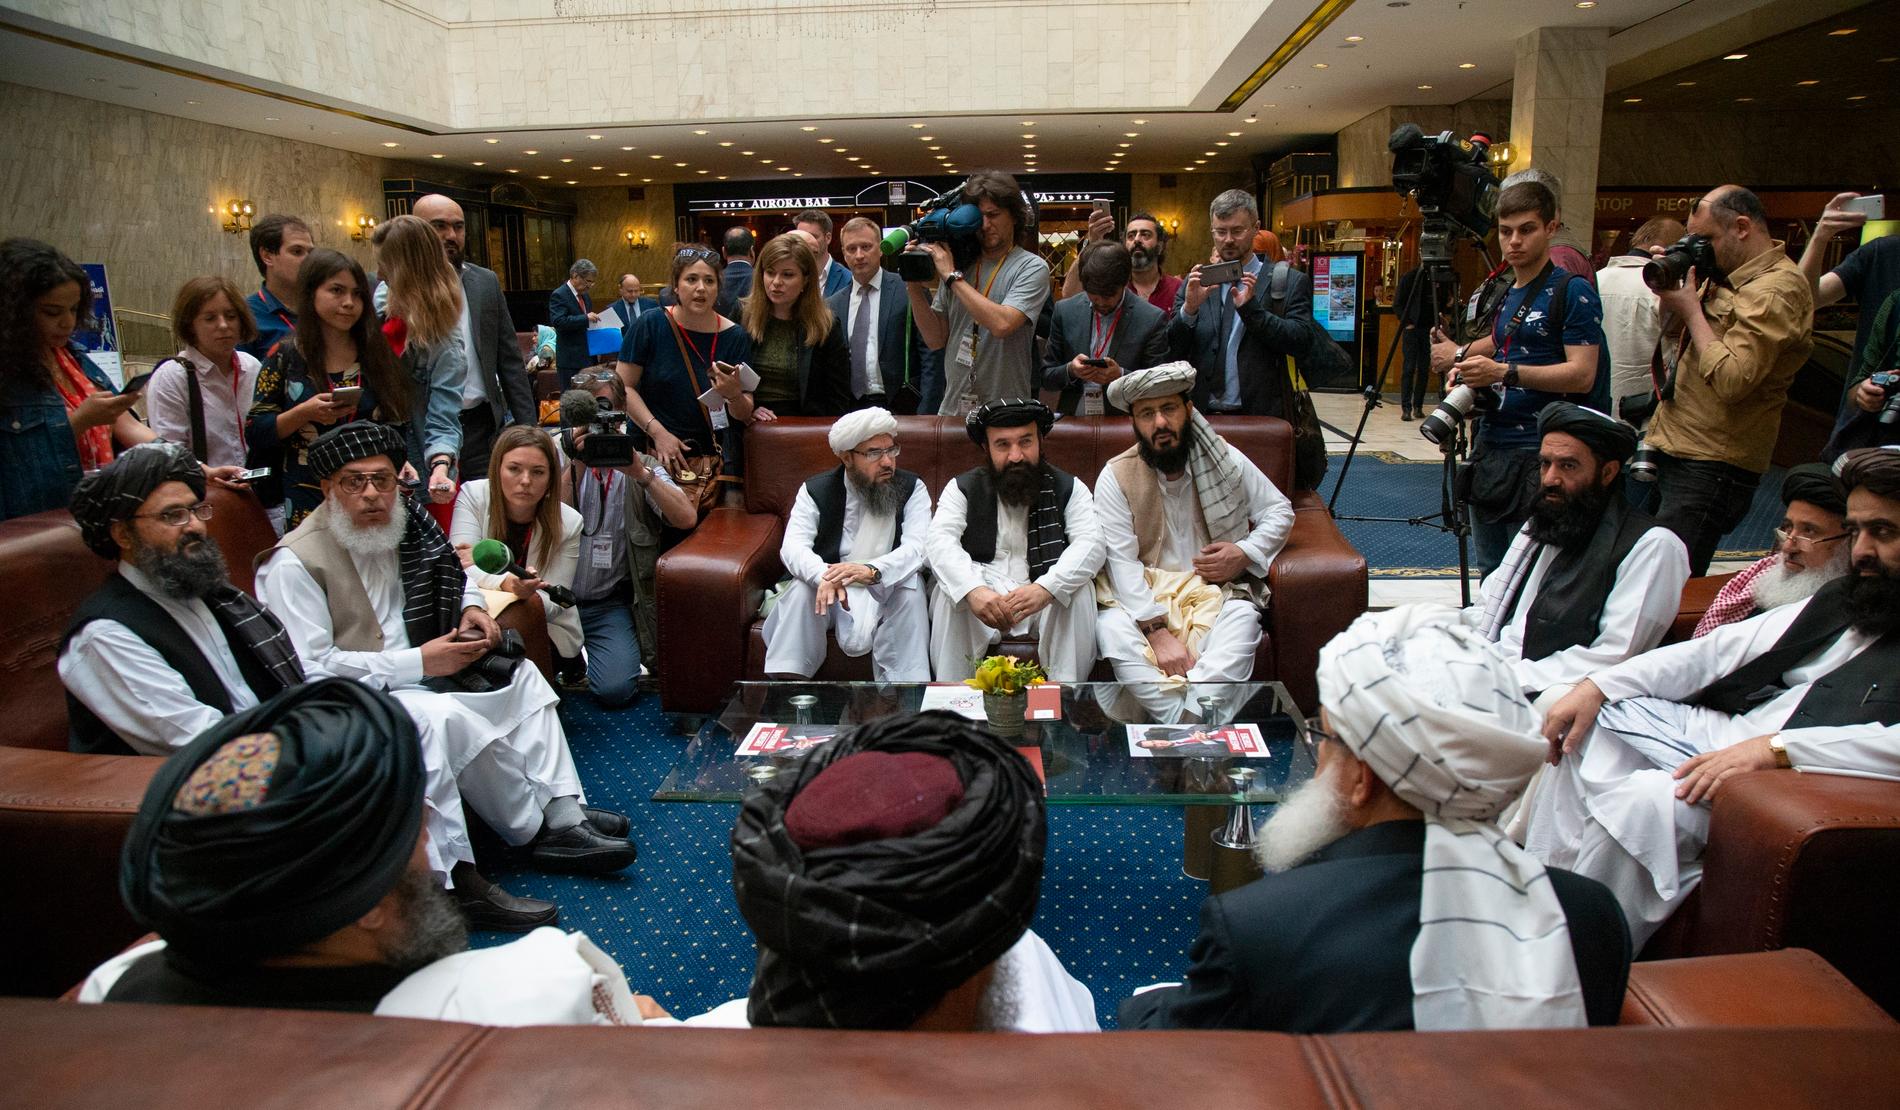 Talibanernas högsta politiska ledare Abdul Ghani Baradar och andra talibaner samtalar med reportrar under fredssamtalen i ryska Moskva i maj. Arkivbild.